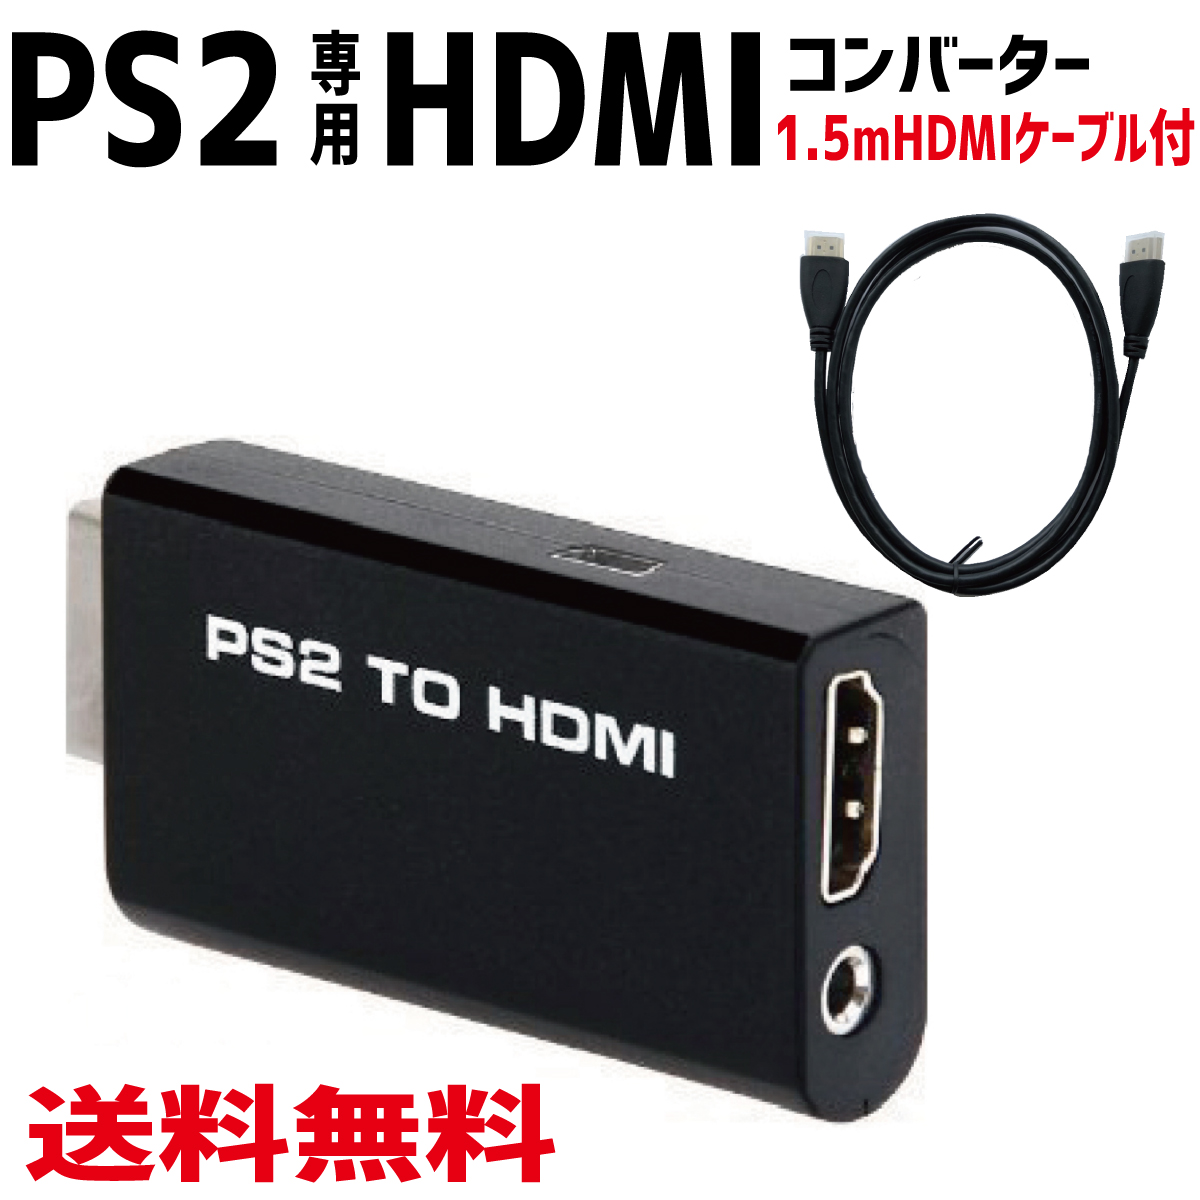 PS2をHDMI端子でつなげる 送料無料ネコポス 全商品ポイント2倍 SEAL限定商品 人気海外一番 PS2 TO HDMI コンバーター 変換 1.5mHDMIケーブル付き to 接続コネクタ PS2専用 アダプター